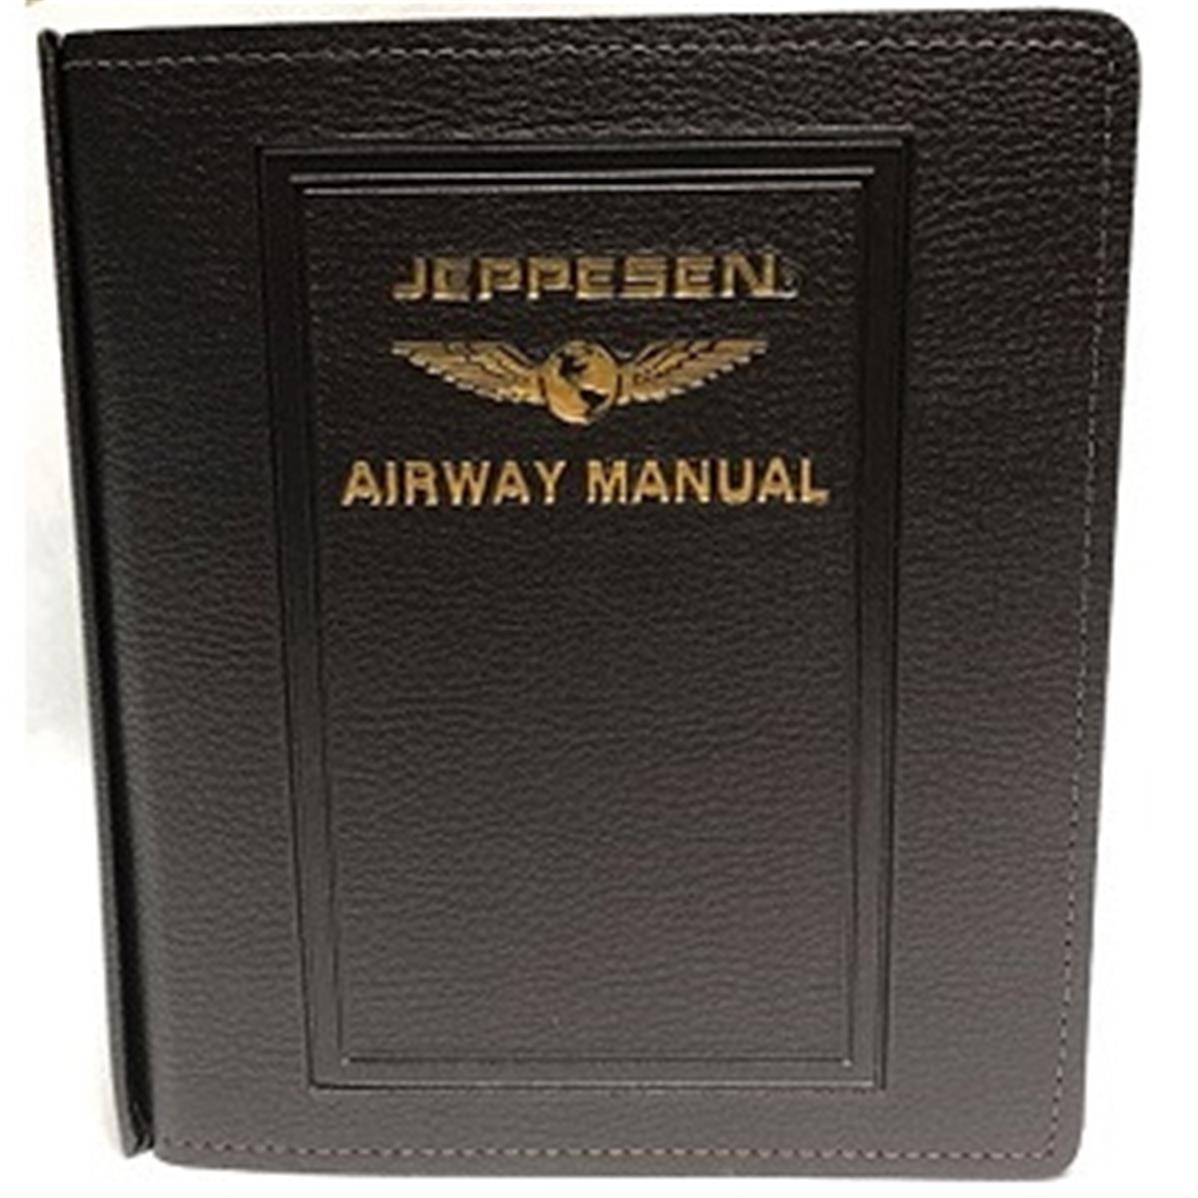 Student Pilot Route Manual Jeppesen - Pilotshop